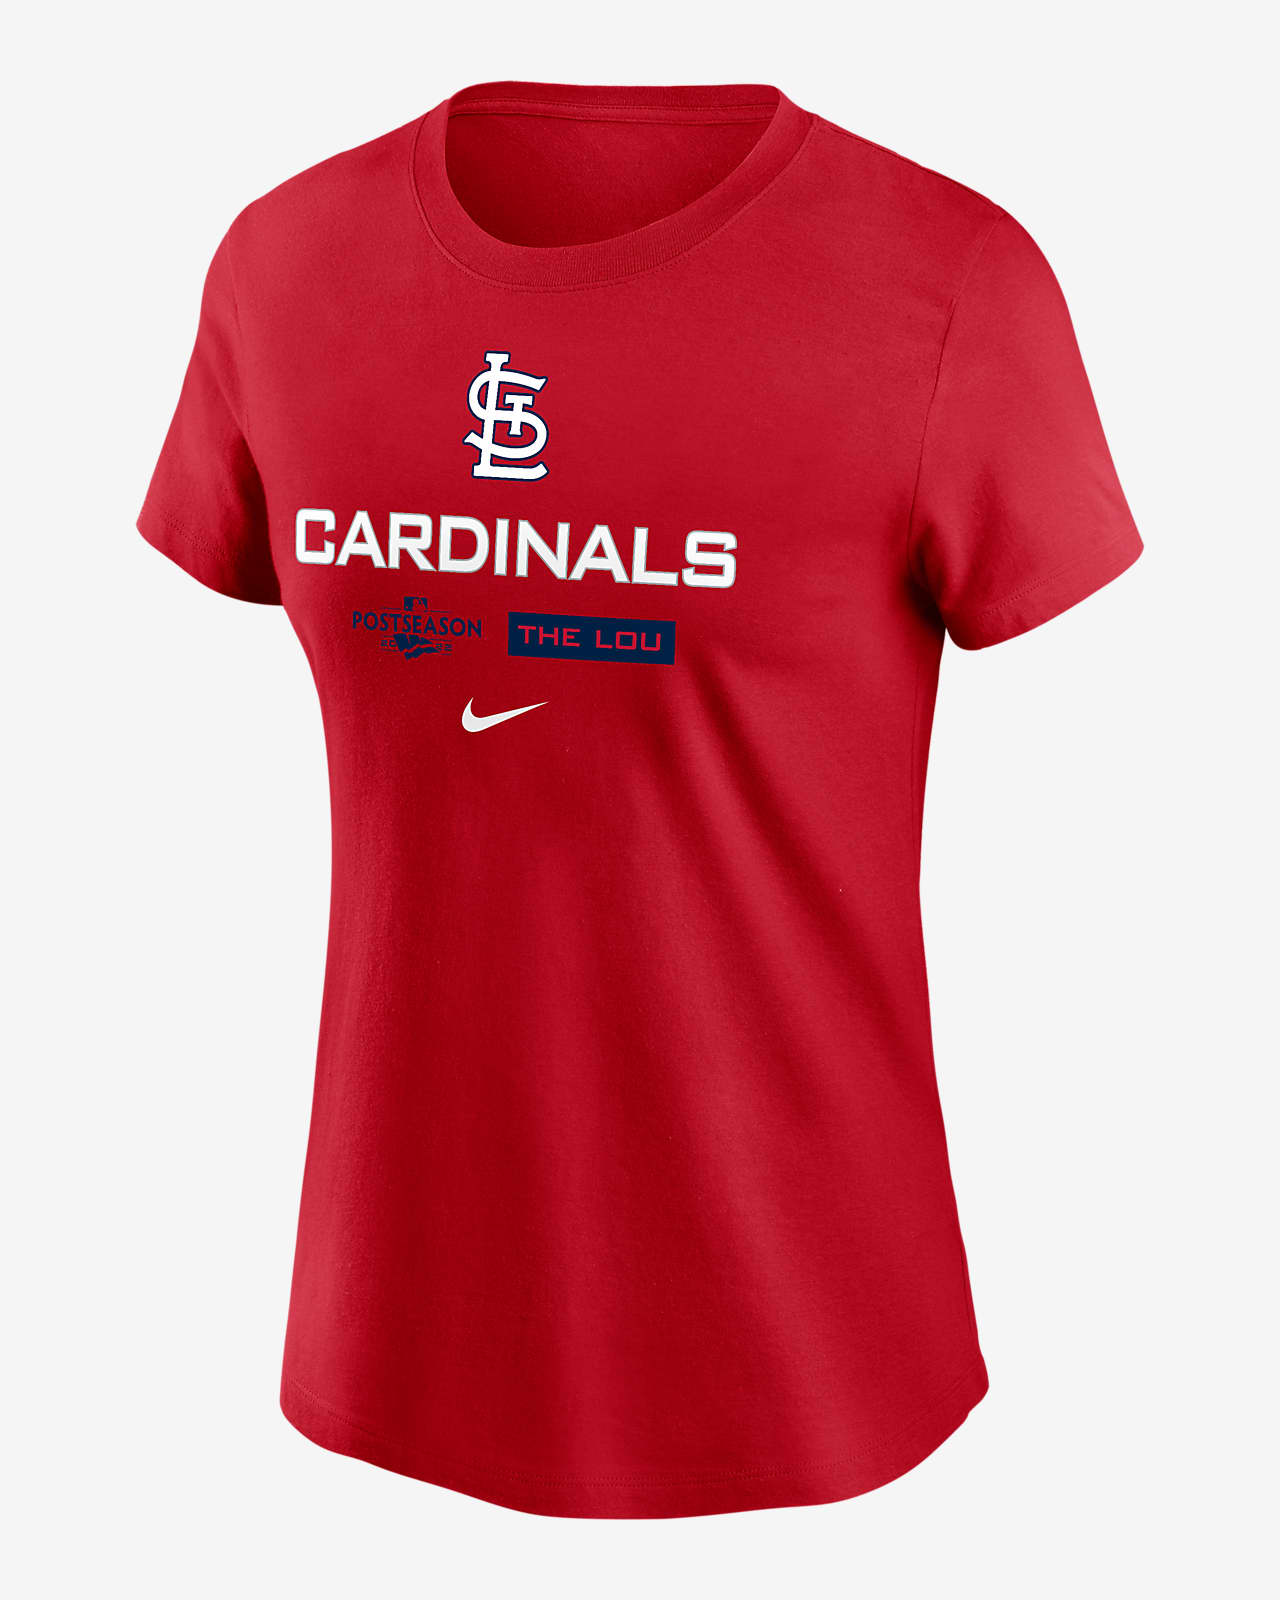 Busch Stadium St Louis Cardinals DSC5197_16 Women's T-Shirt by